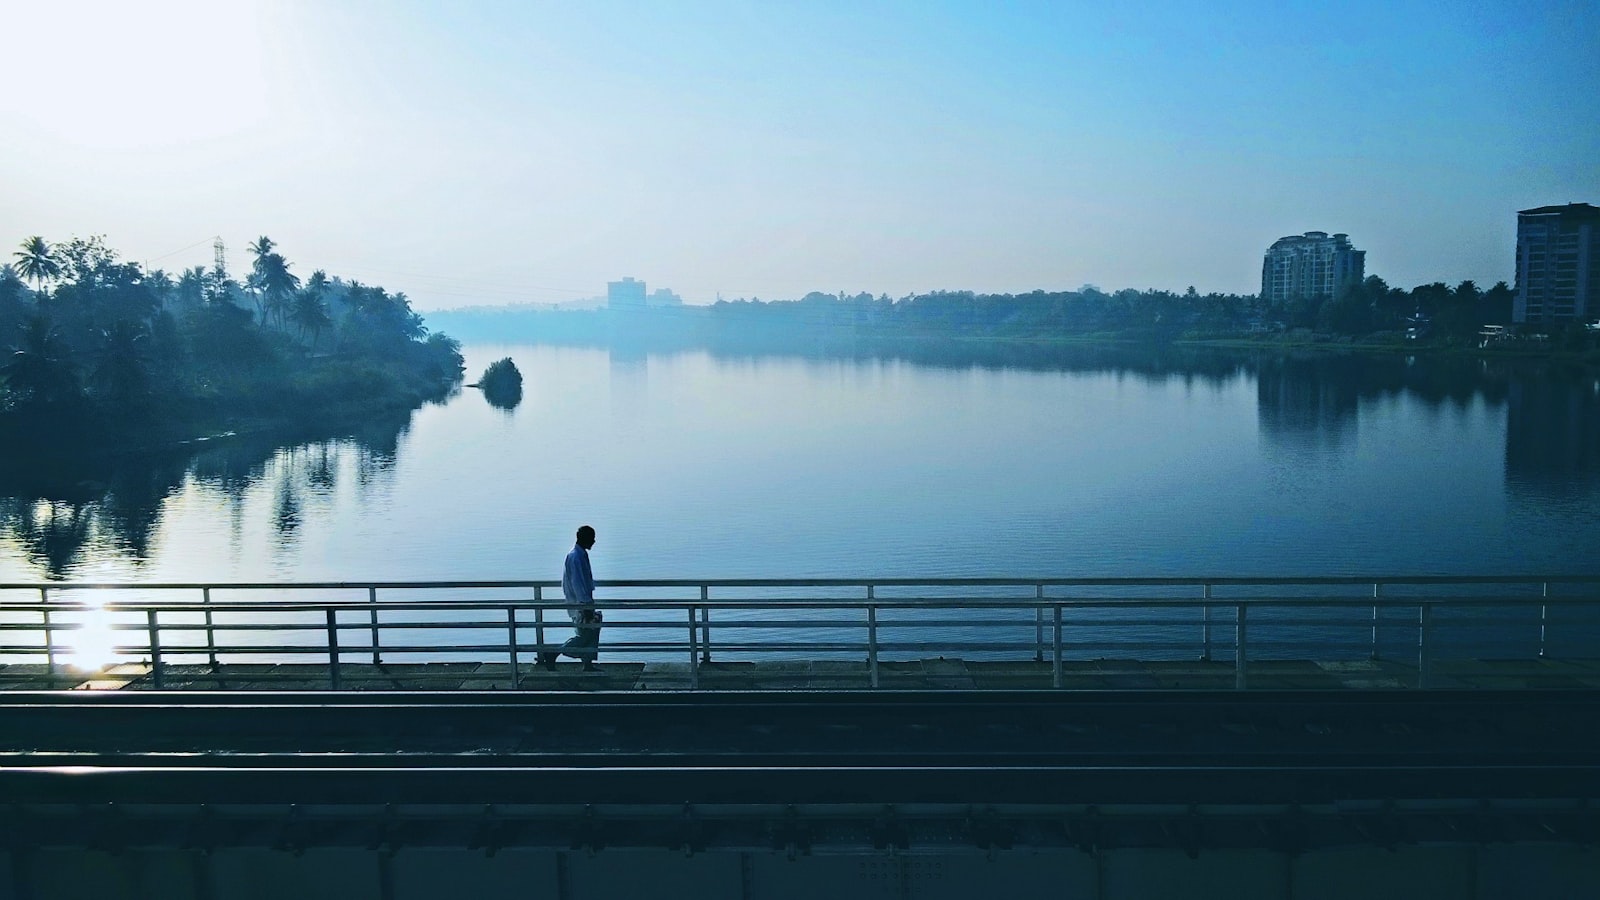 Nokia Lumia 830 sample photo. Person walking on bridge photography